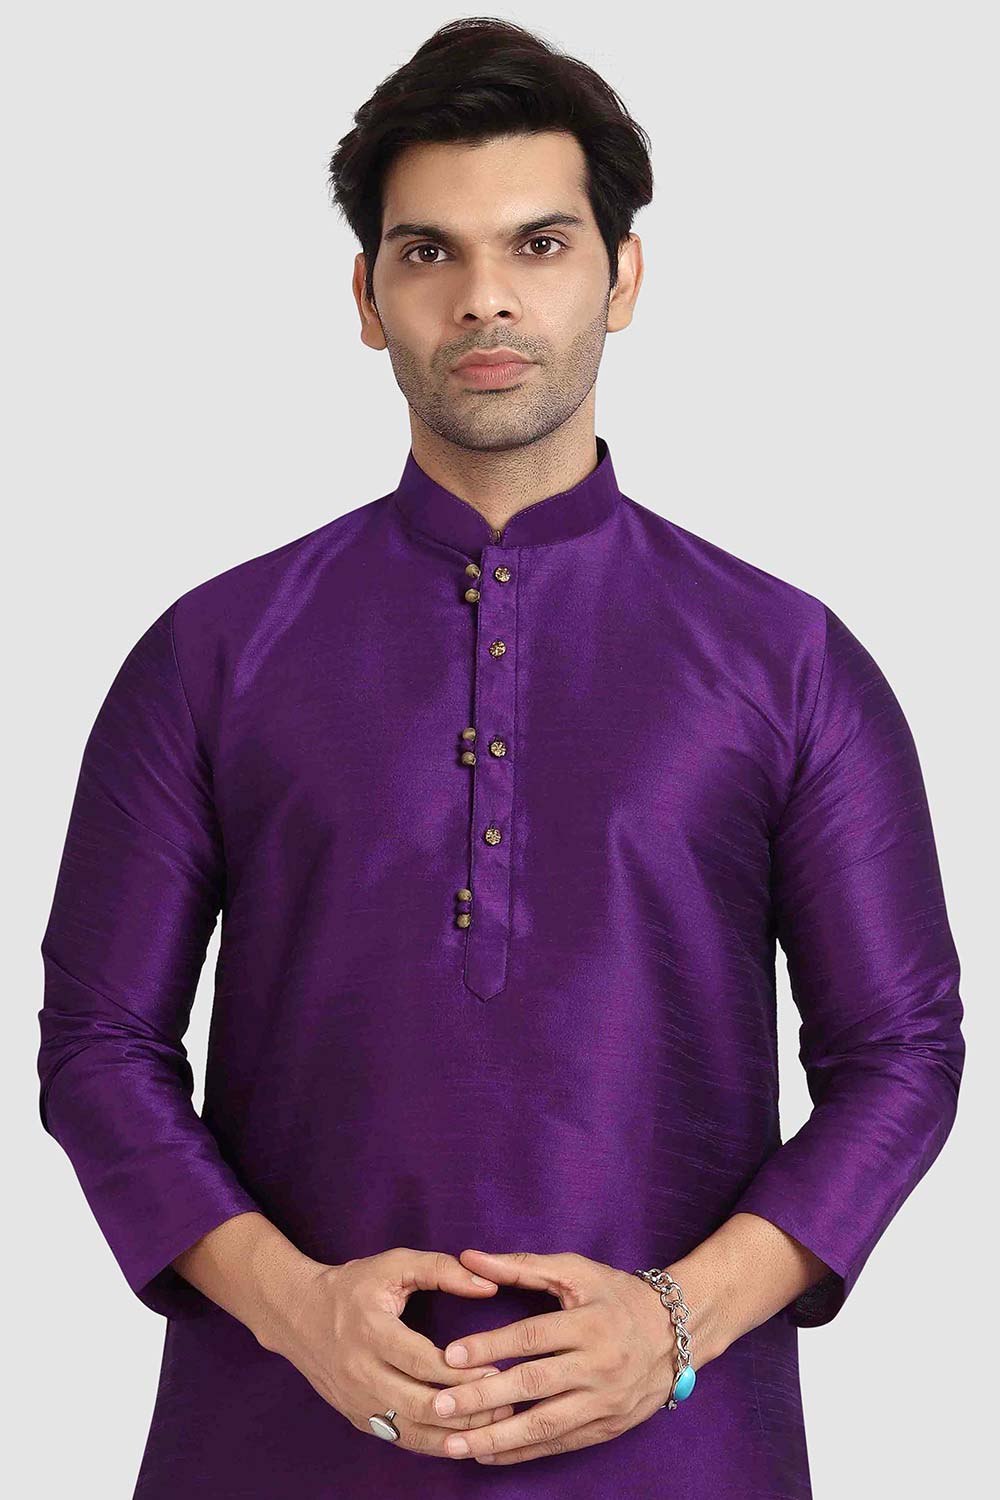 Buy Purple Art Dupion Silk Plain Kurta Pajama Online - Karmaplace